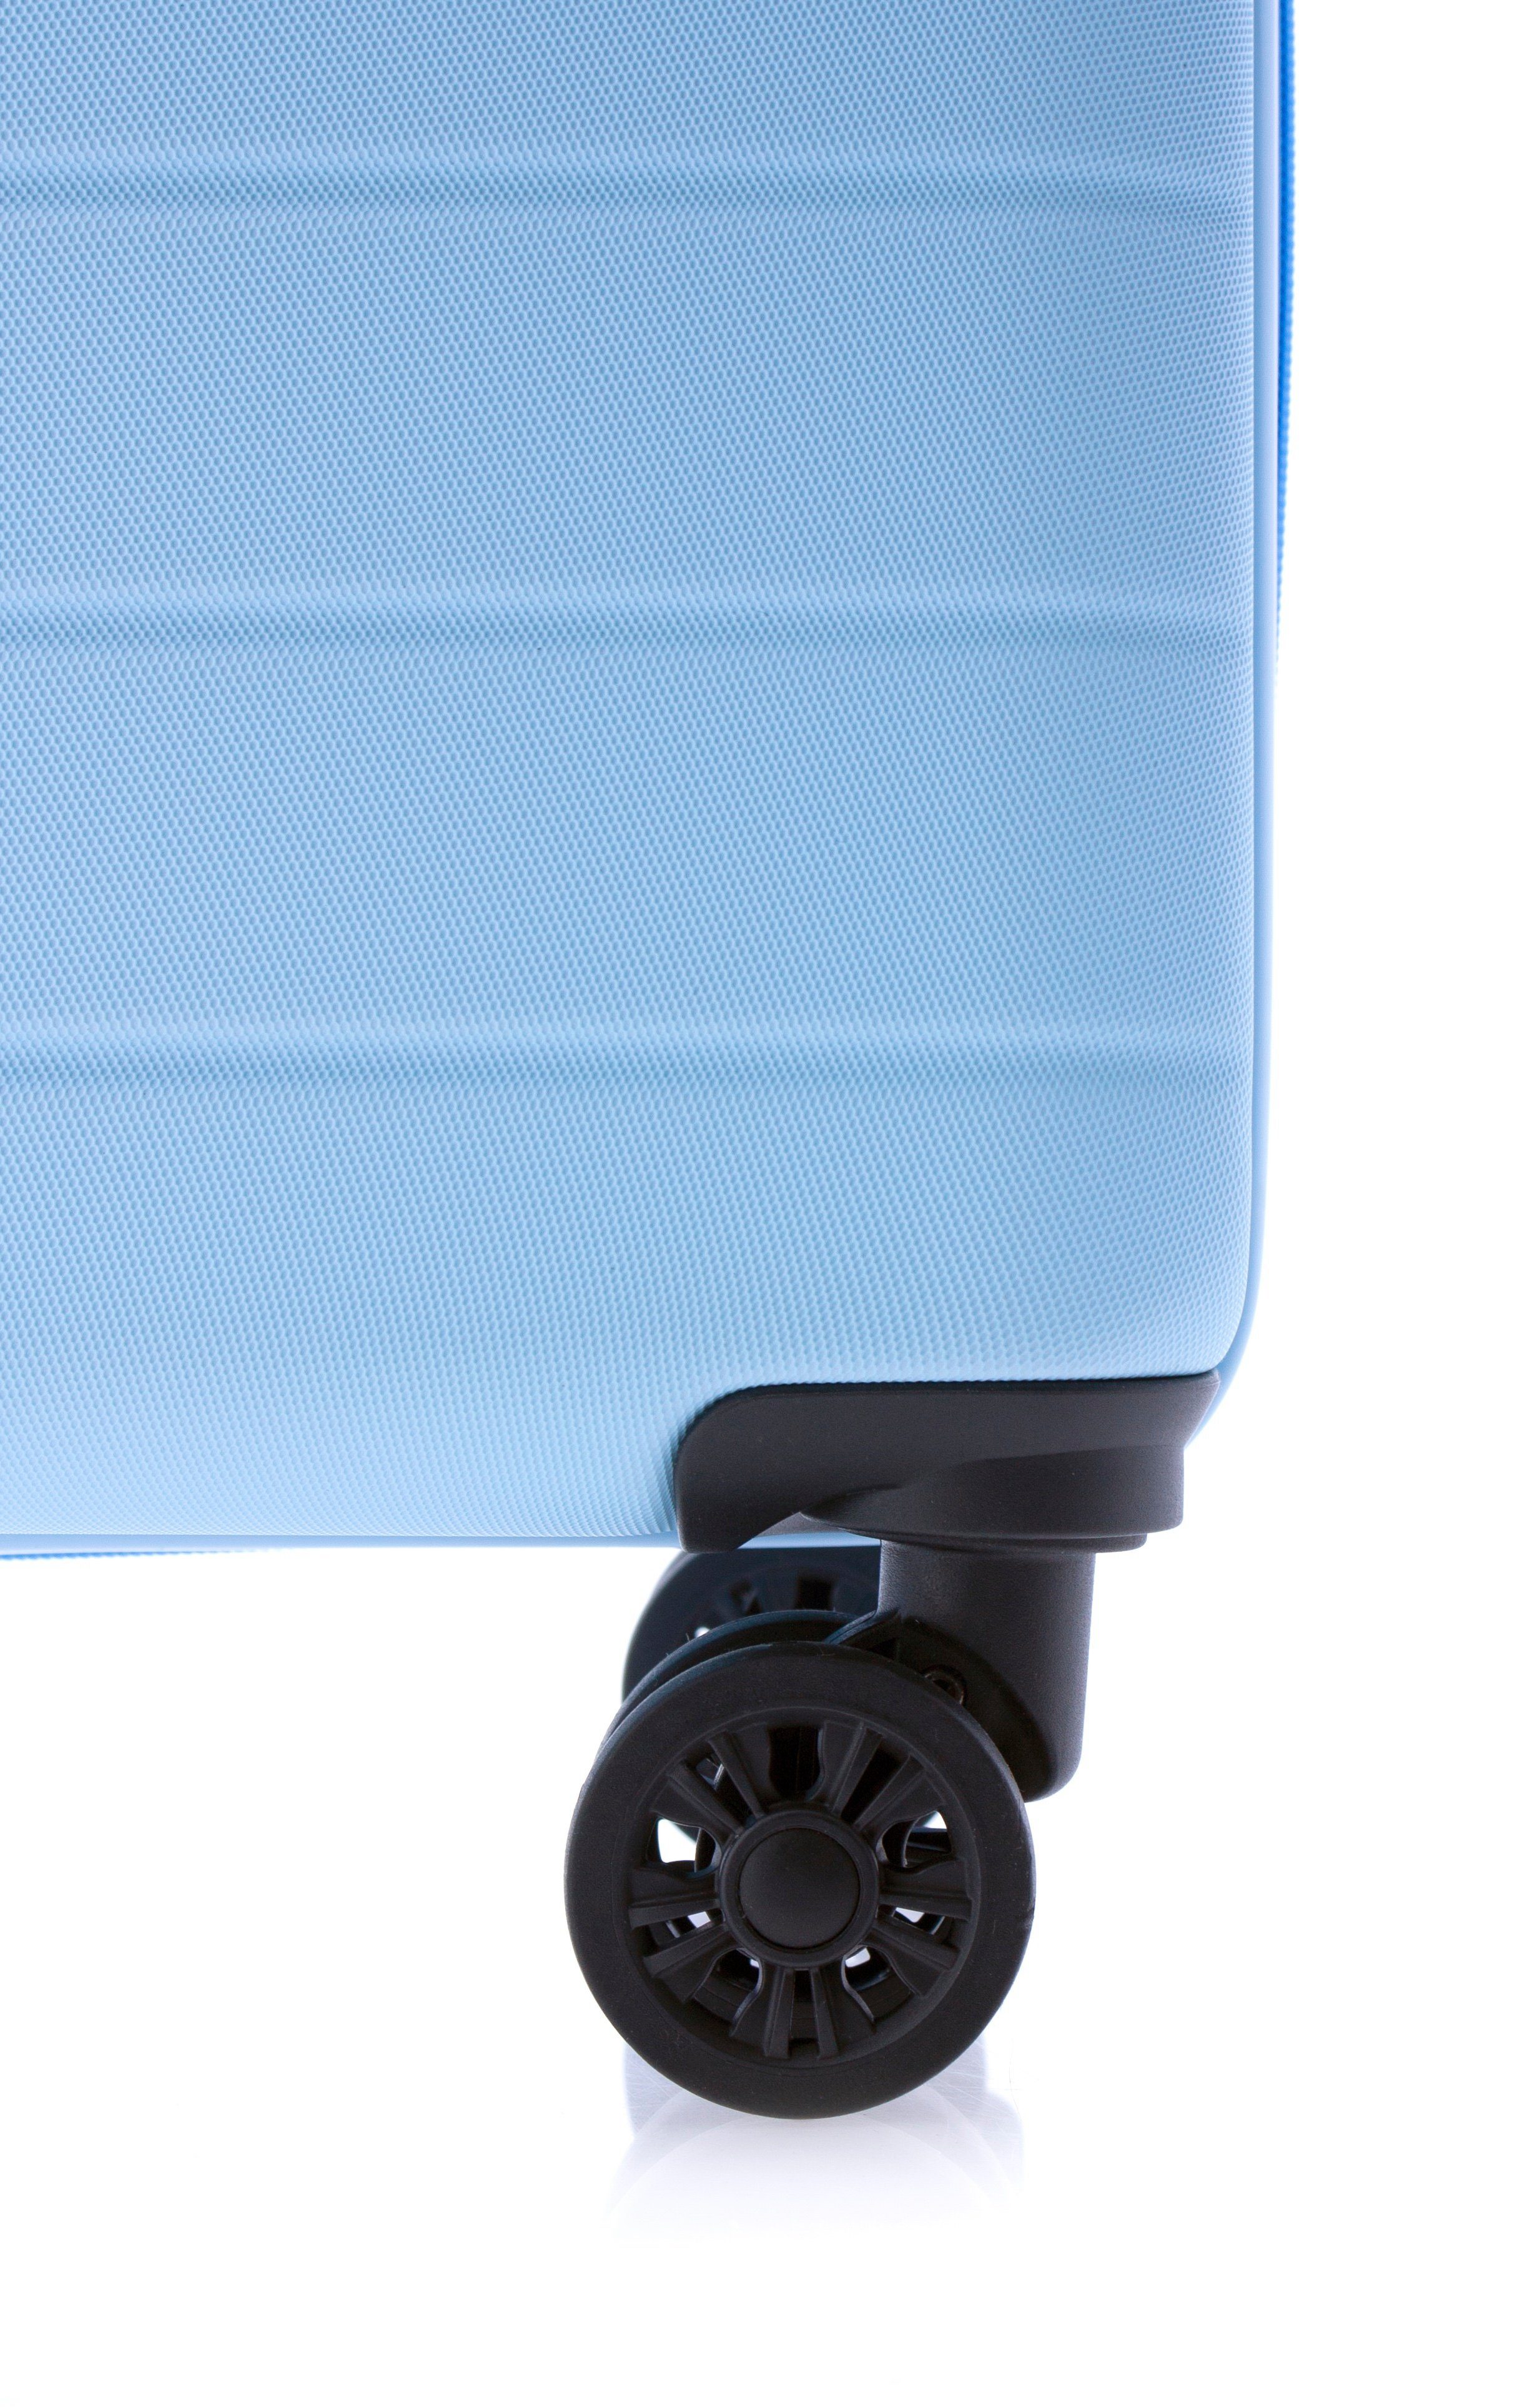 2-teilig blau, Farben: GLADIATOR 55 gelb 65 Dehnfalte, cm, hellblau, - TSA-Schloss, rot, Hartschalen-Trolley und Rollen, schwarz, Koffer-Set 4 minzgrün,